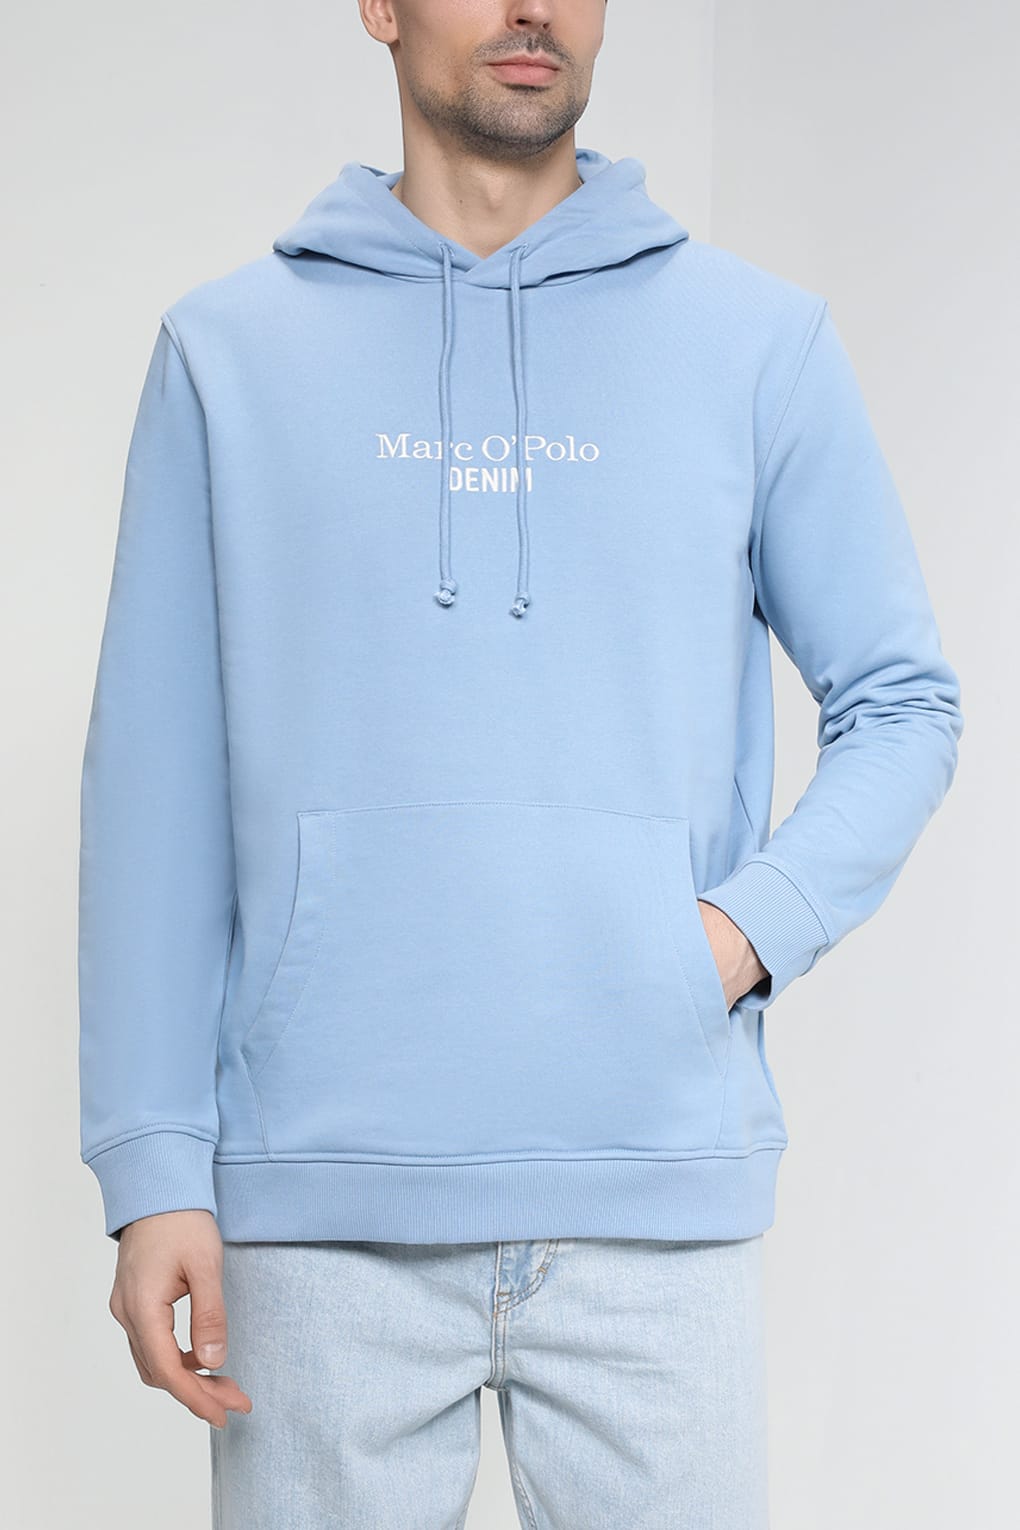 Худи мужское Marc O'Polo Denim M62 4040 54436 голубое XL